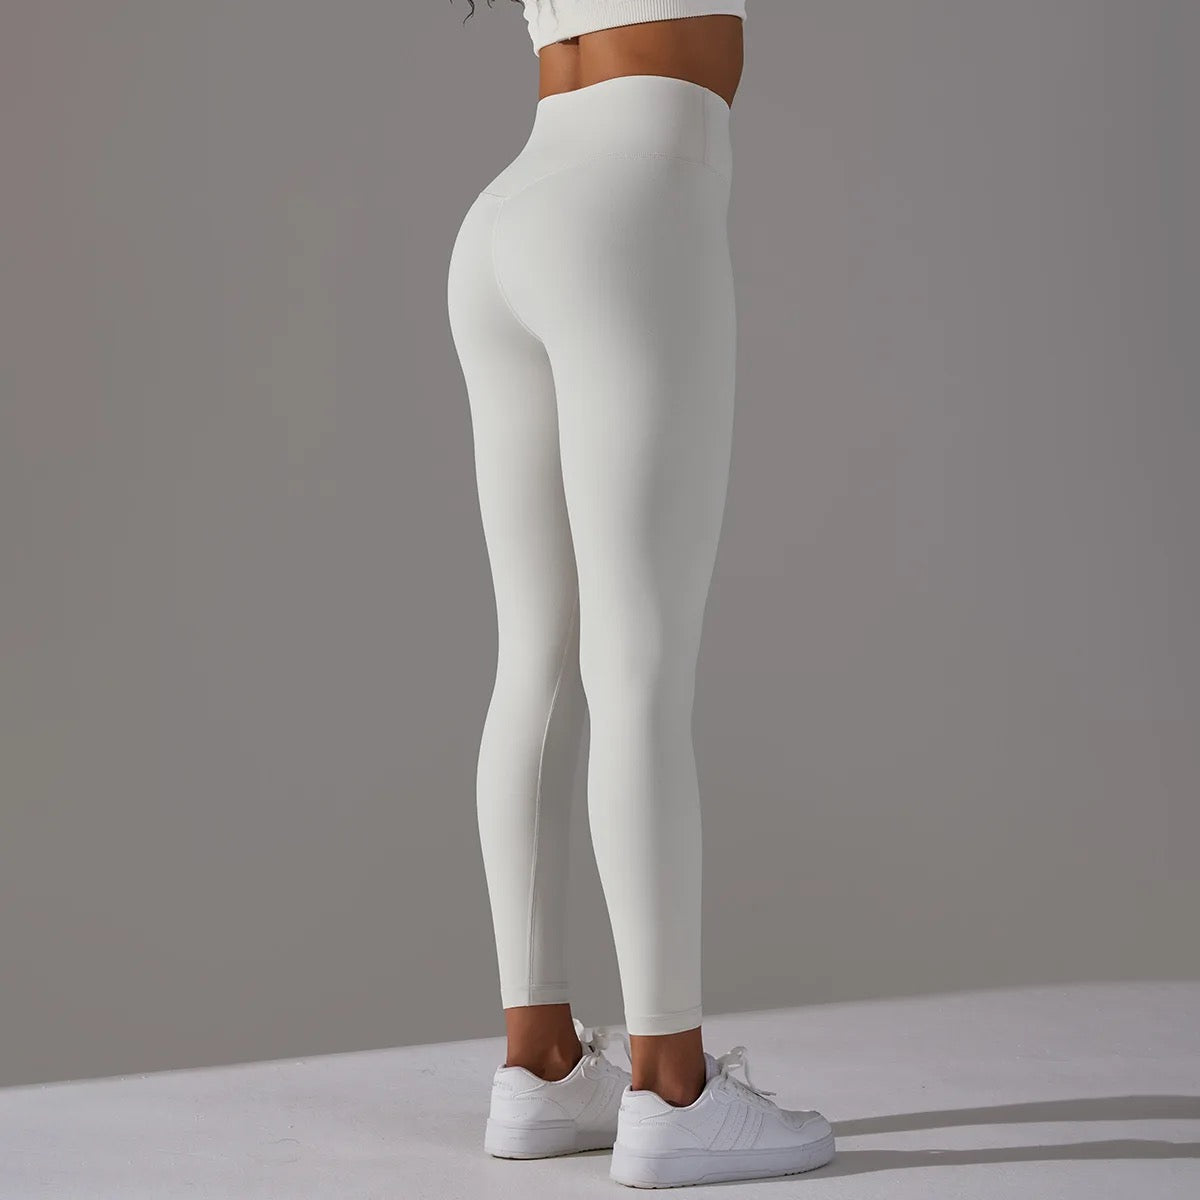 white sports leggings